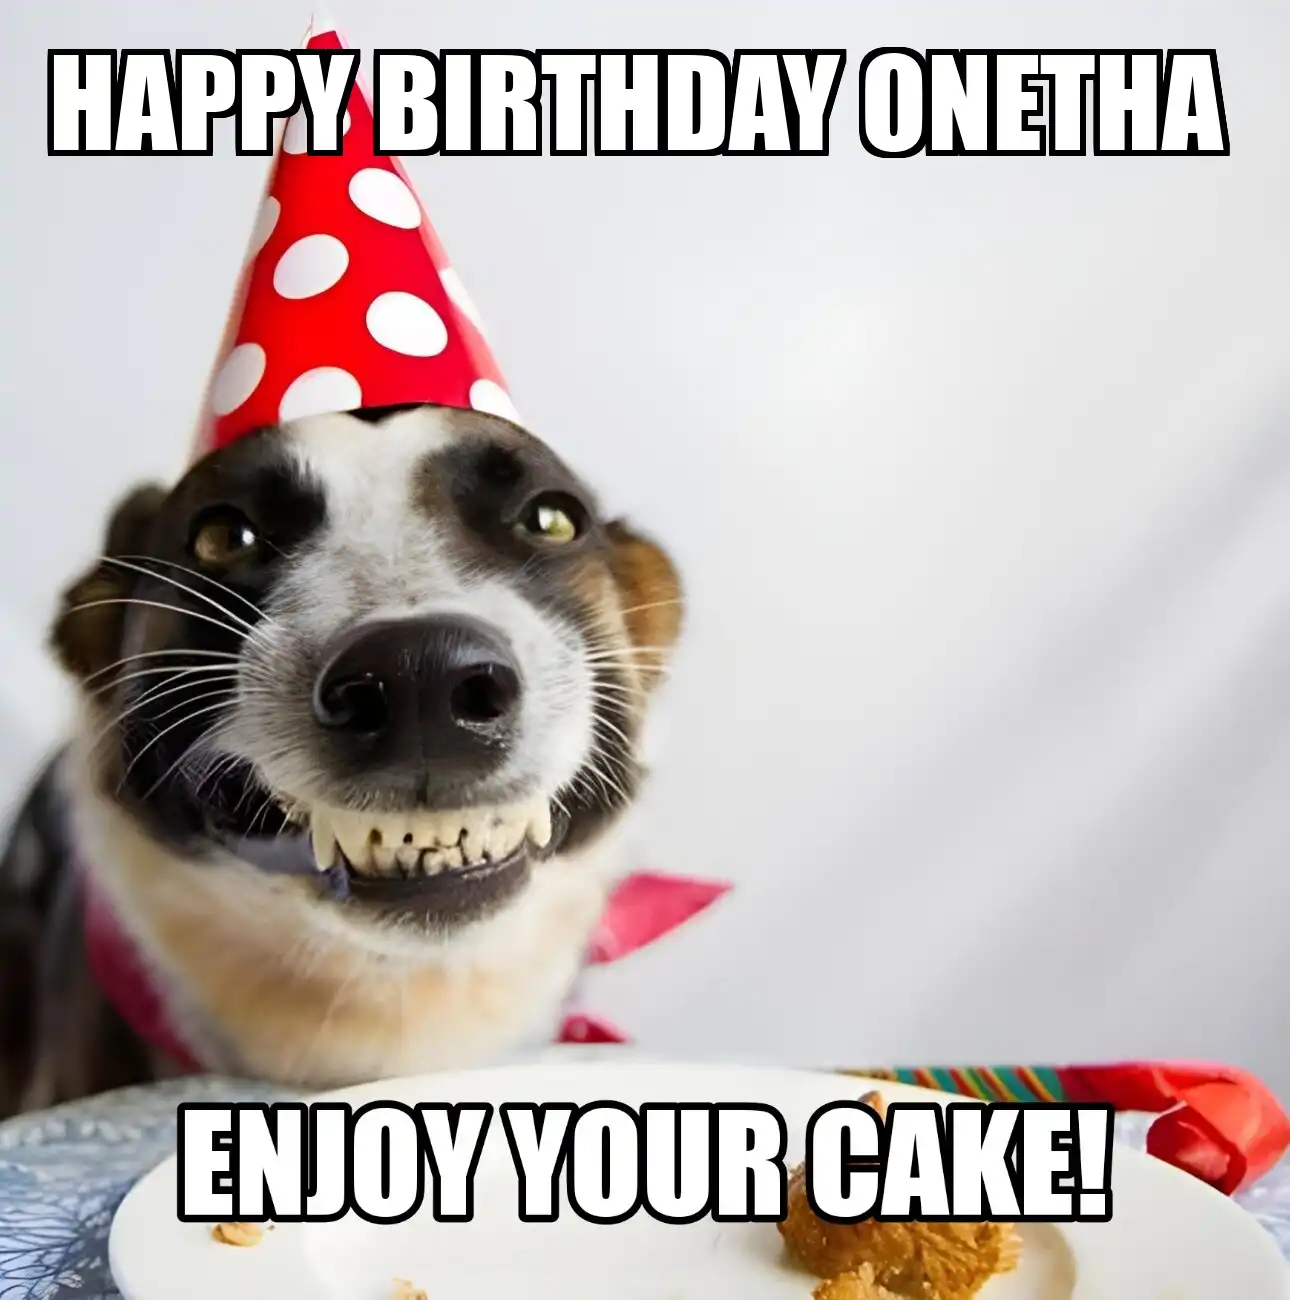 Happy Birthday Onetha Enjoy Your Cake Dog Meme